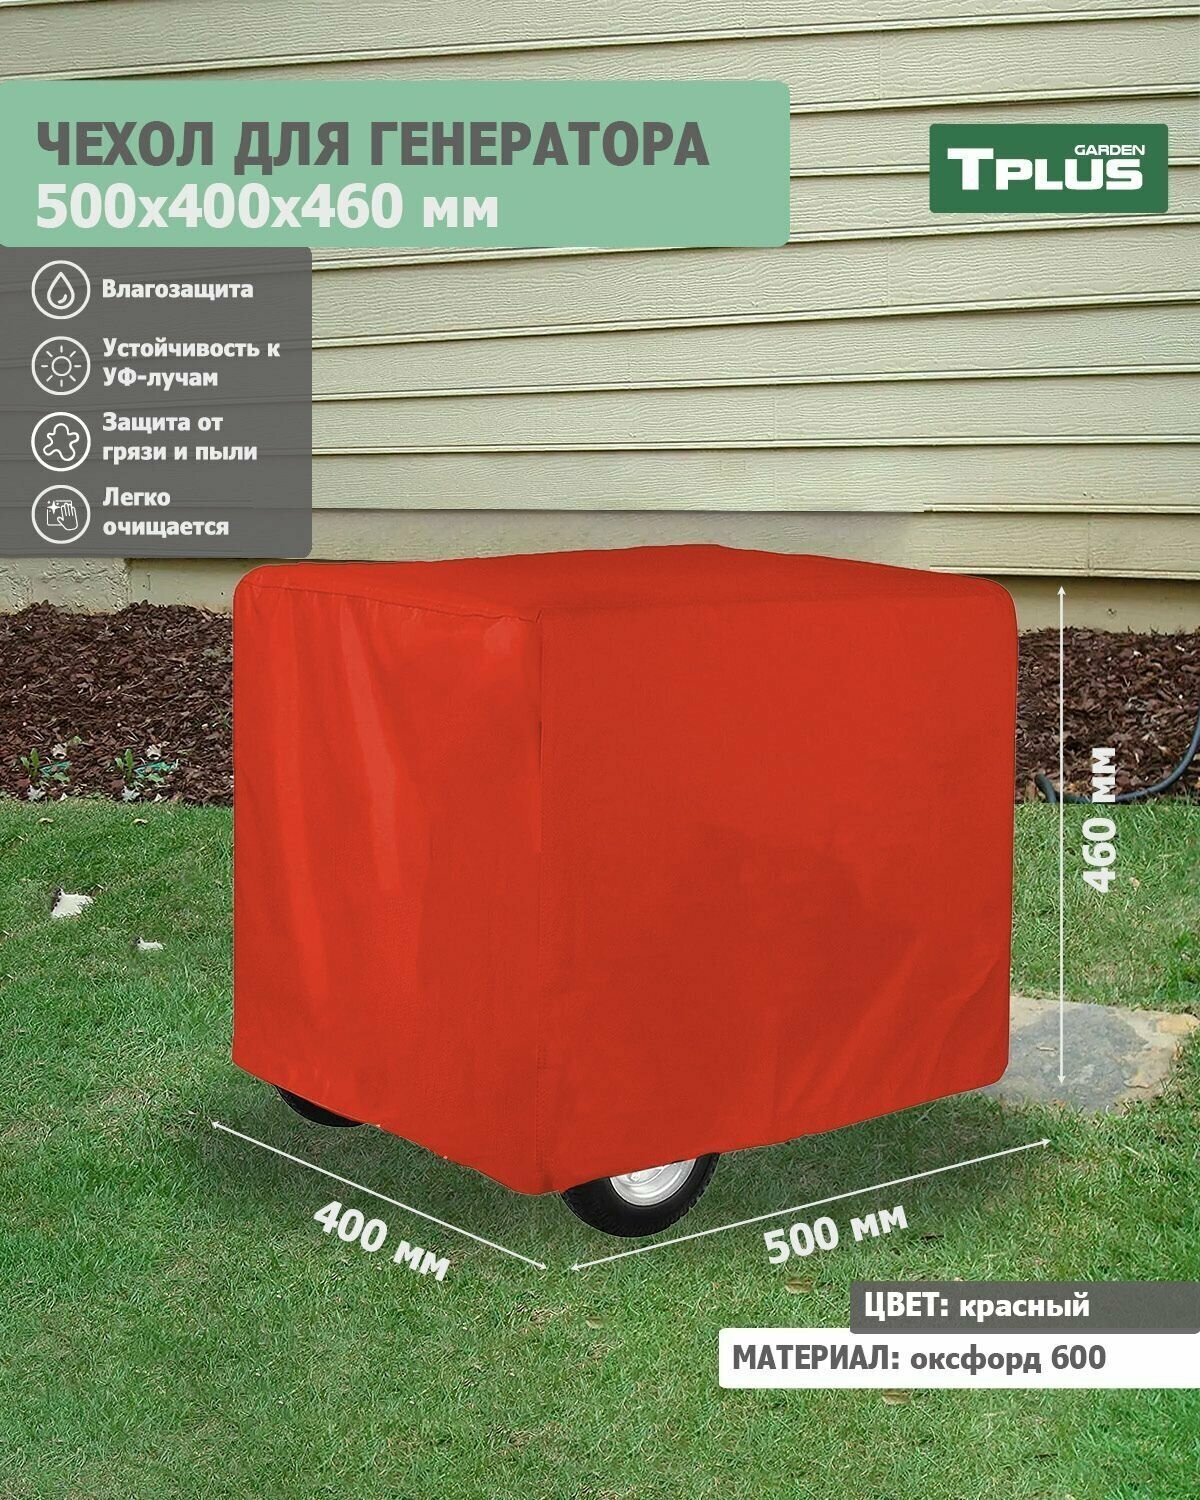 Чехол для генератора 500x400x460 мм (оксфорд 600, красный), Tplus - фотография № 1